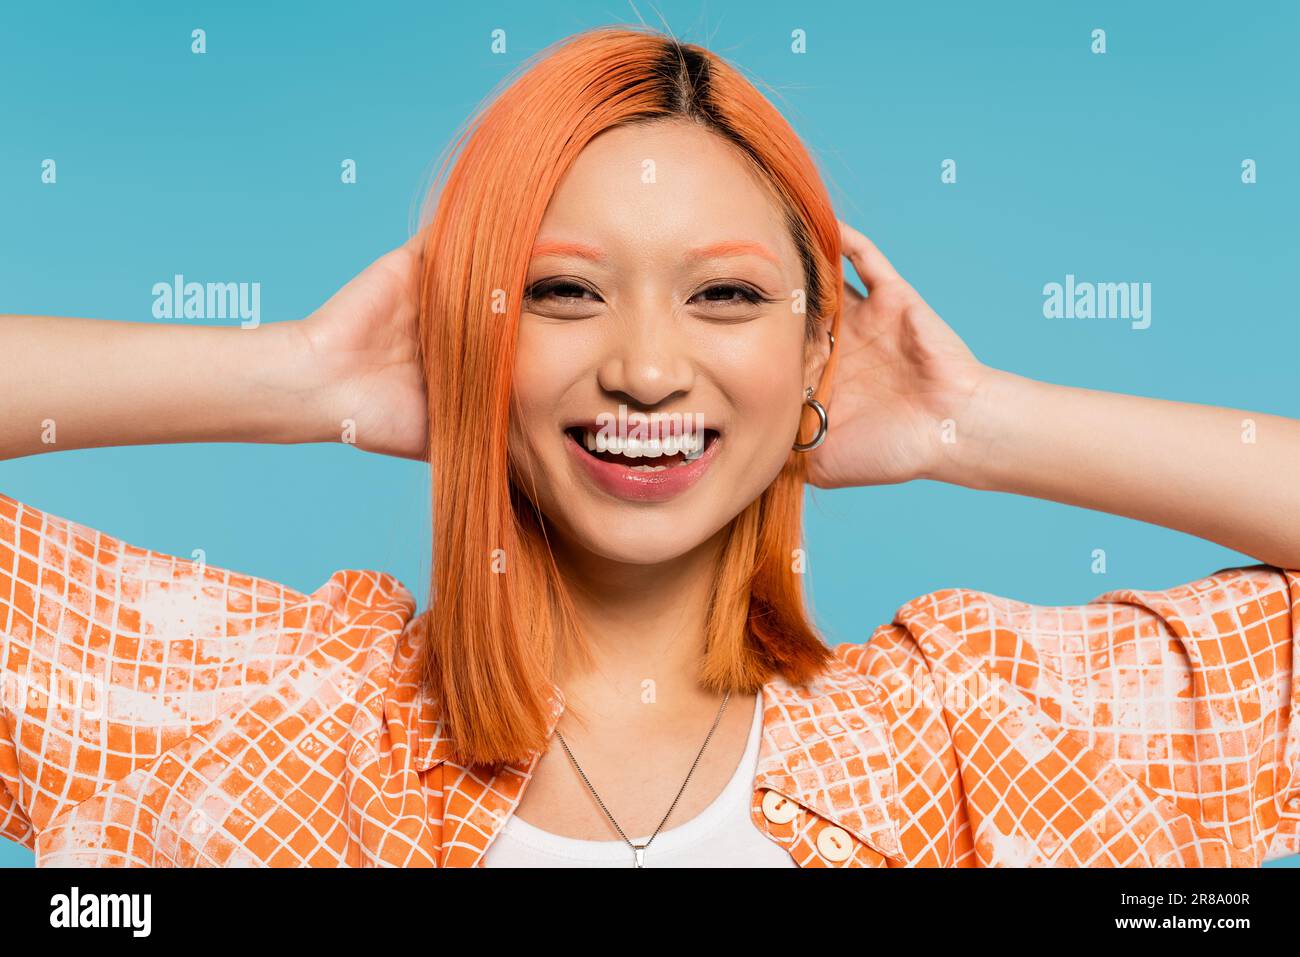 positivité, sourire éclatant, jeune femme asiatique aux cheveux teints debout dans une chemise orange et souriant sur fond bleu, tenue décontractée, liberté, gai Banque D'Images